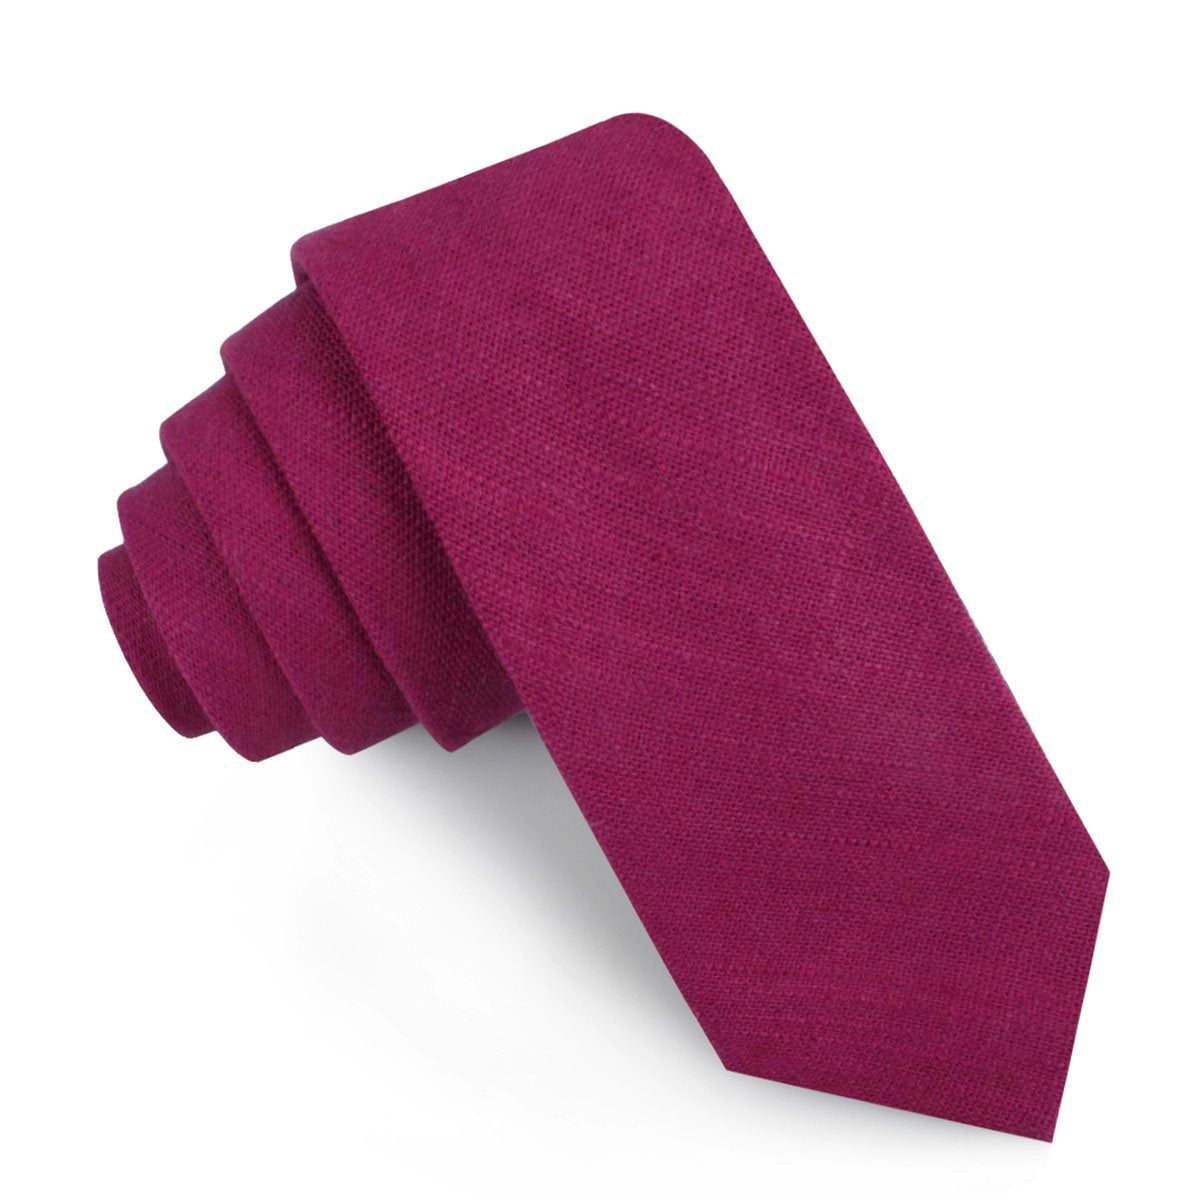 Sangria Slub Linen Skinny Tie